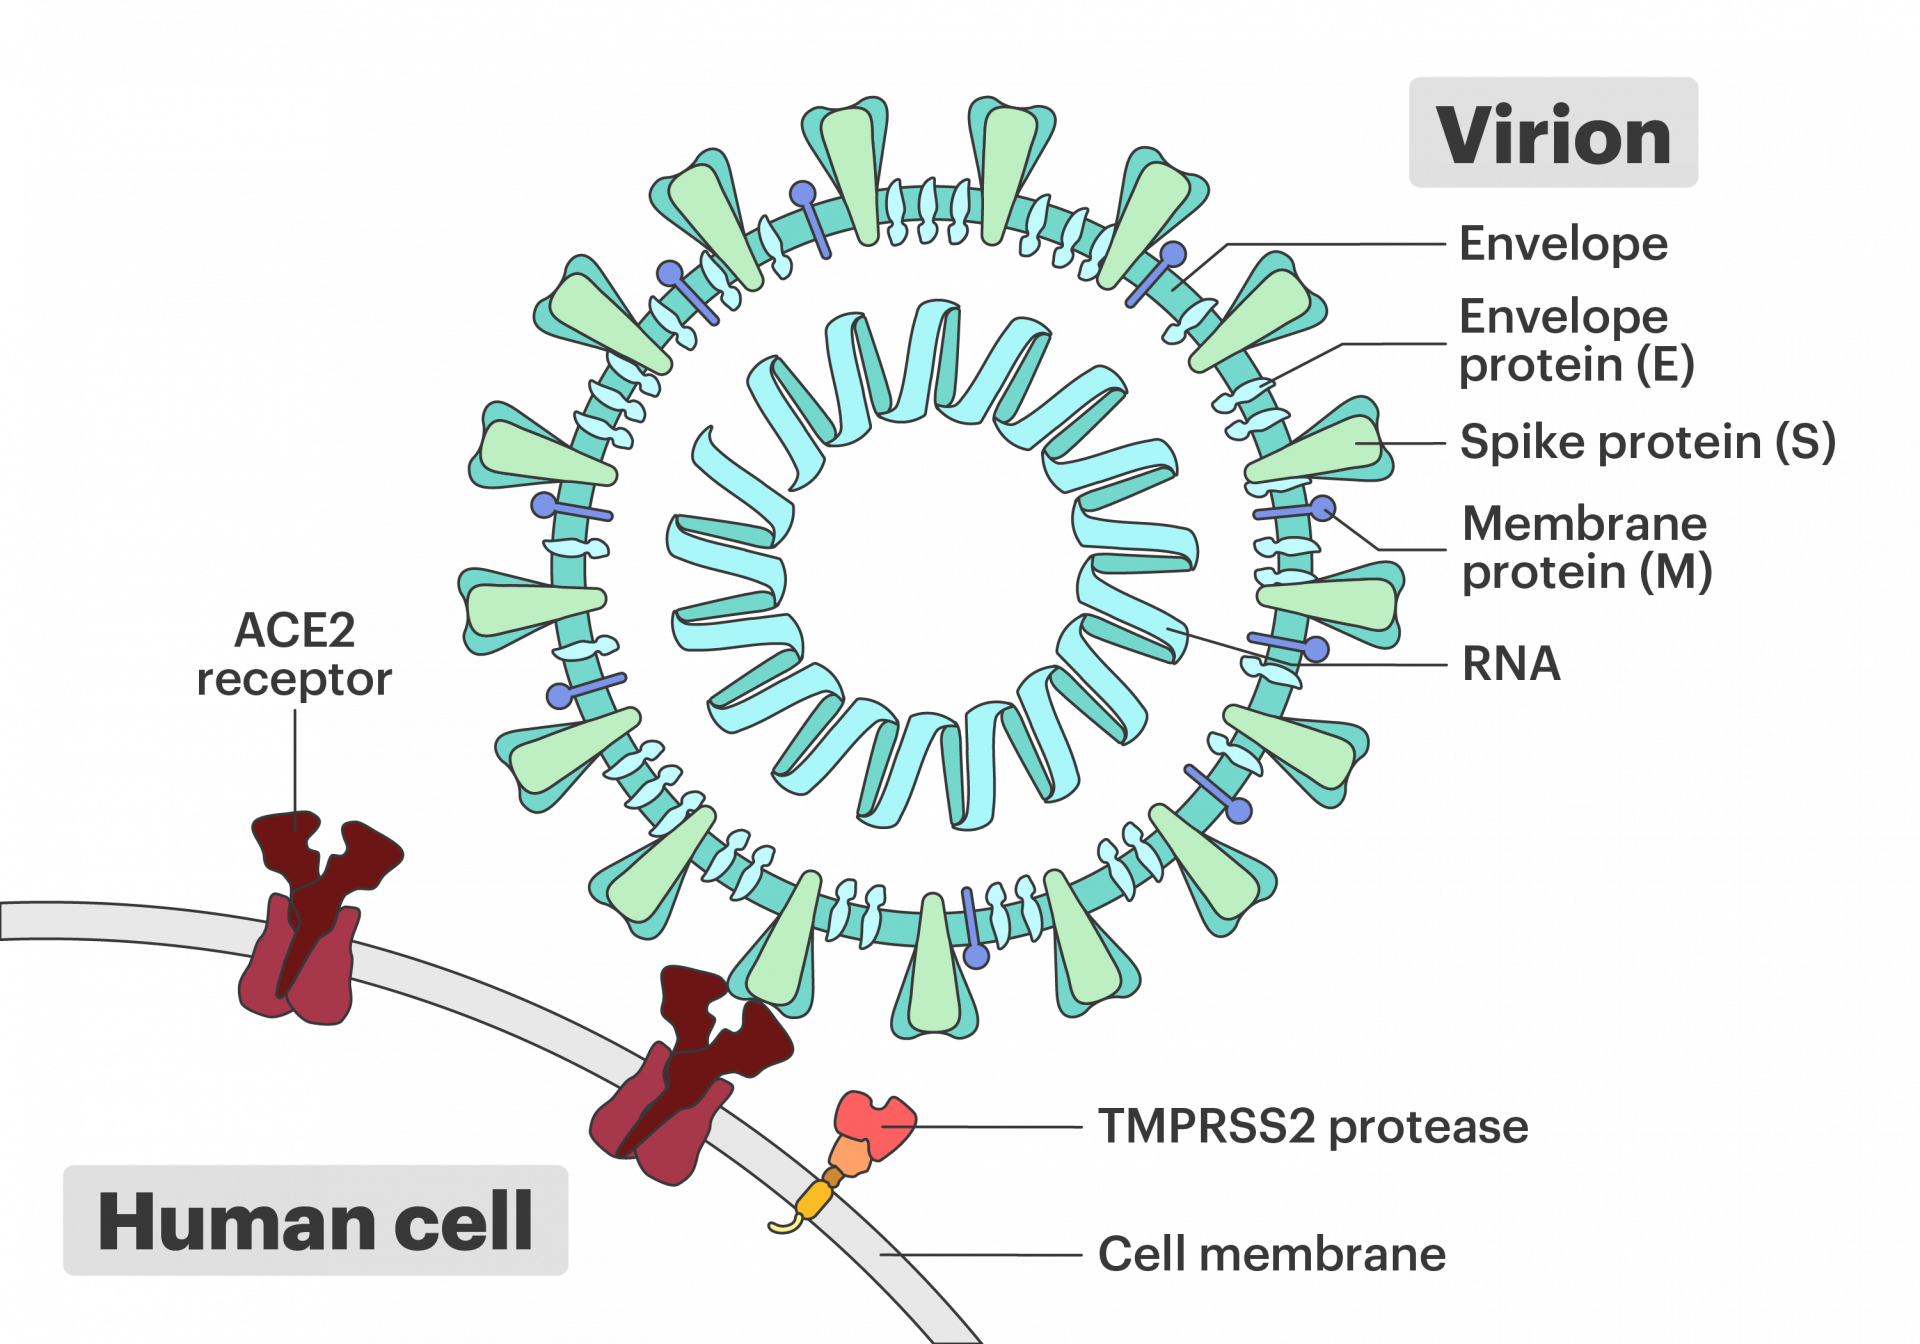 코로나19 바이러스의 세포 침투 모습입니다. 스파이크 단백질, ACE2 수용체, TMPRSS2 효소가 표현되어 있습니다. IGI/Davian Ho, CC BY-NC-SA.